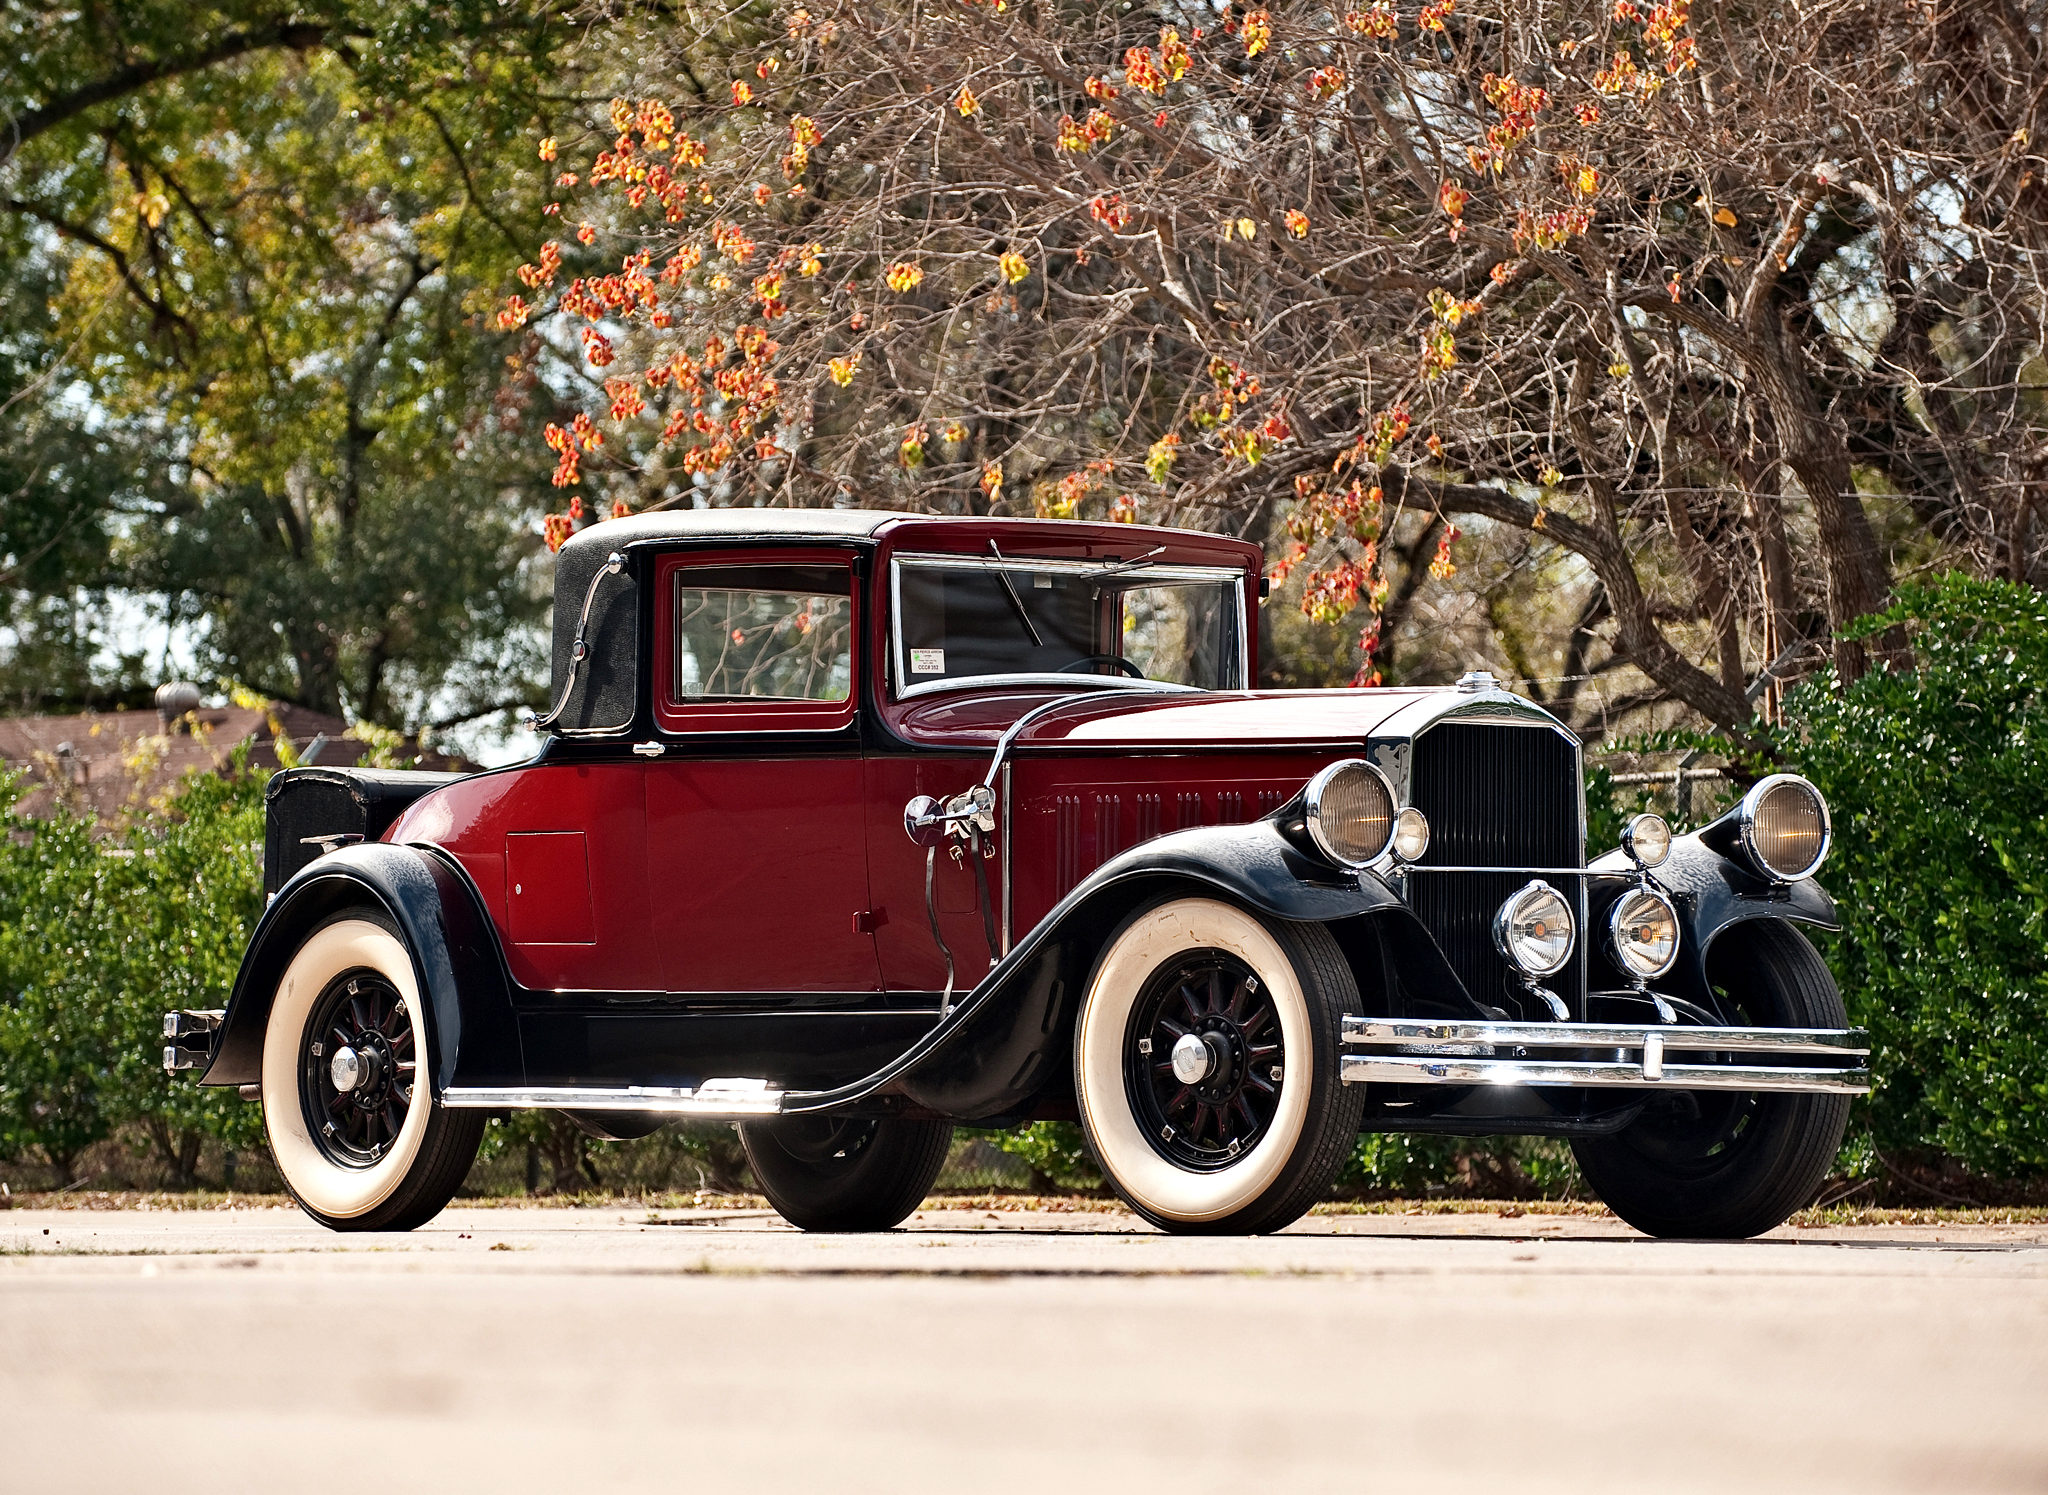 1929 Pierce-Arrow Model 133 Coupe